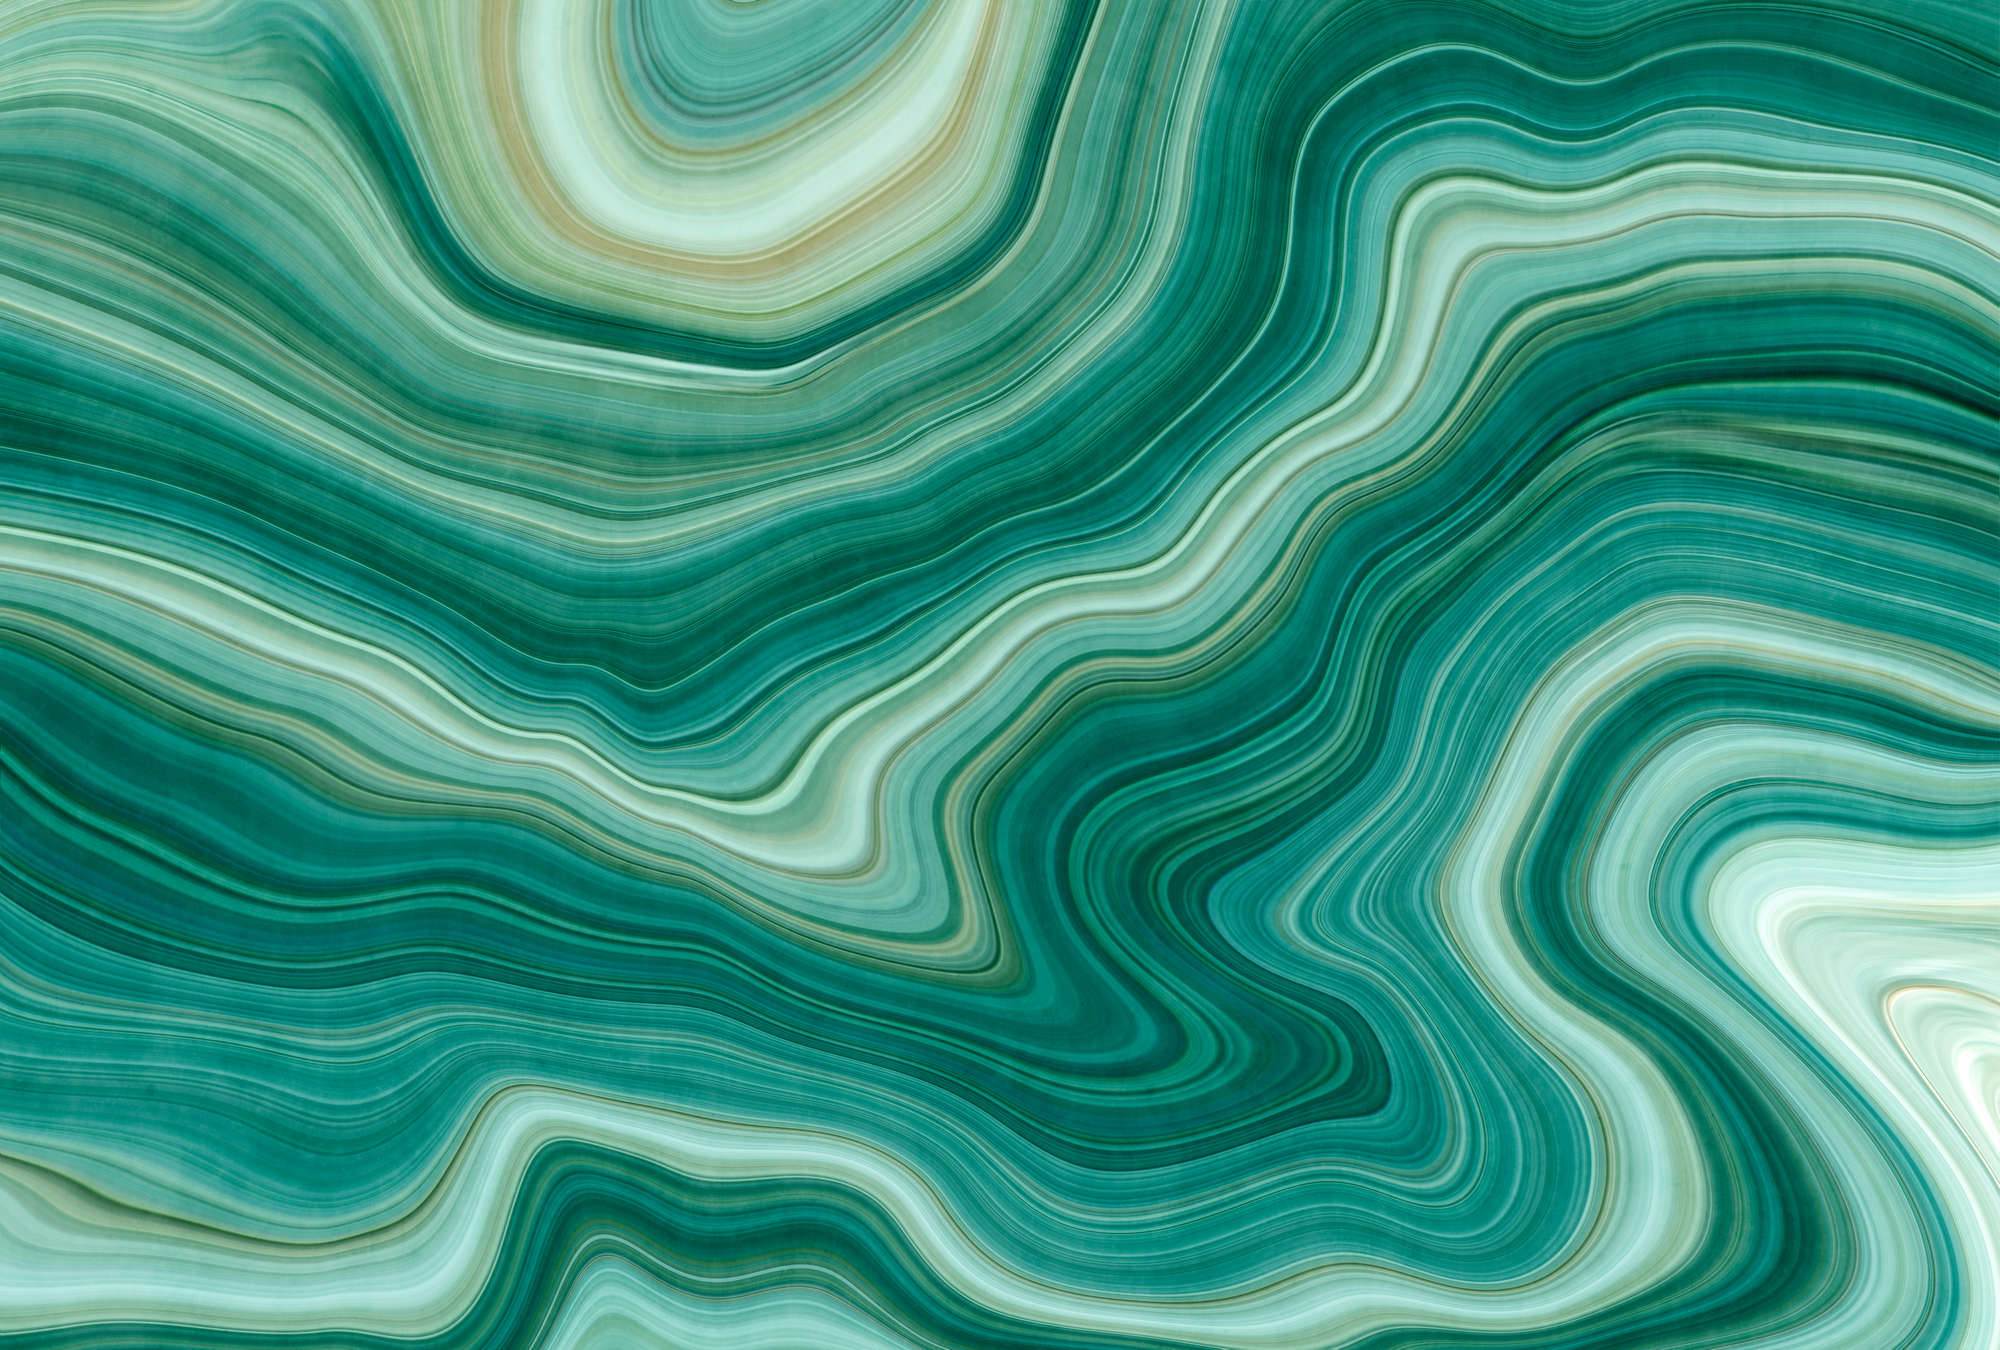             Batik Fototapete marmorierte Optik – Grün, Grau
        